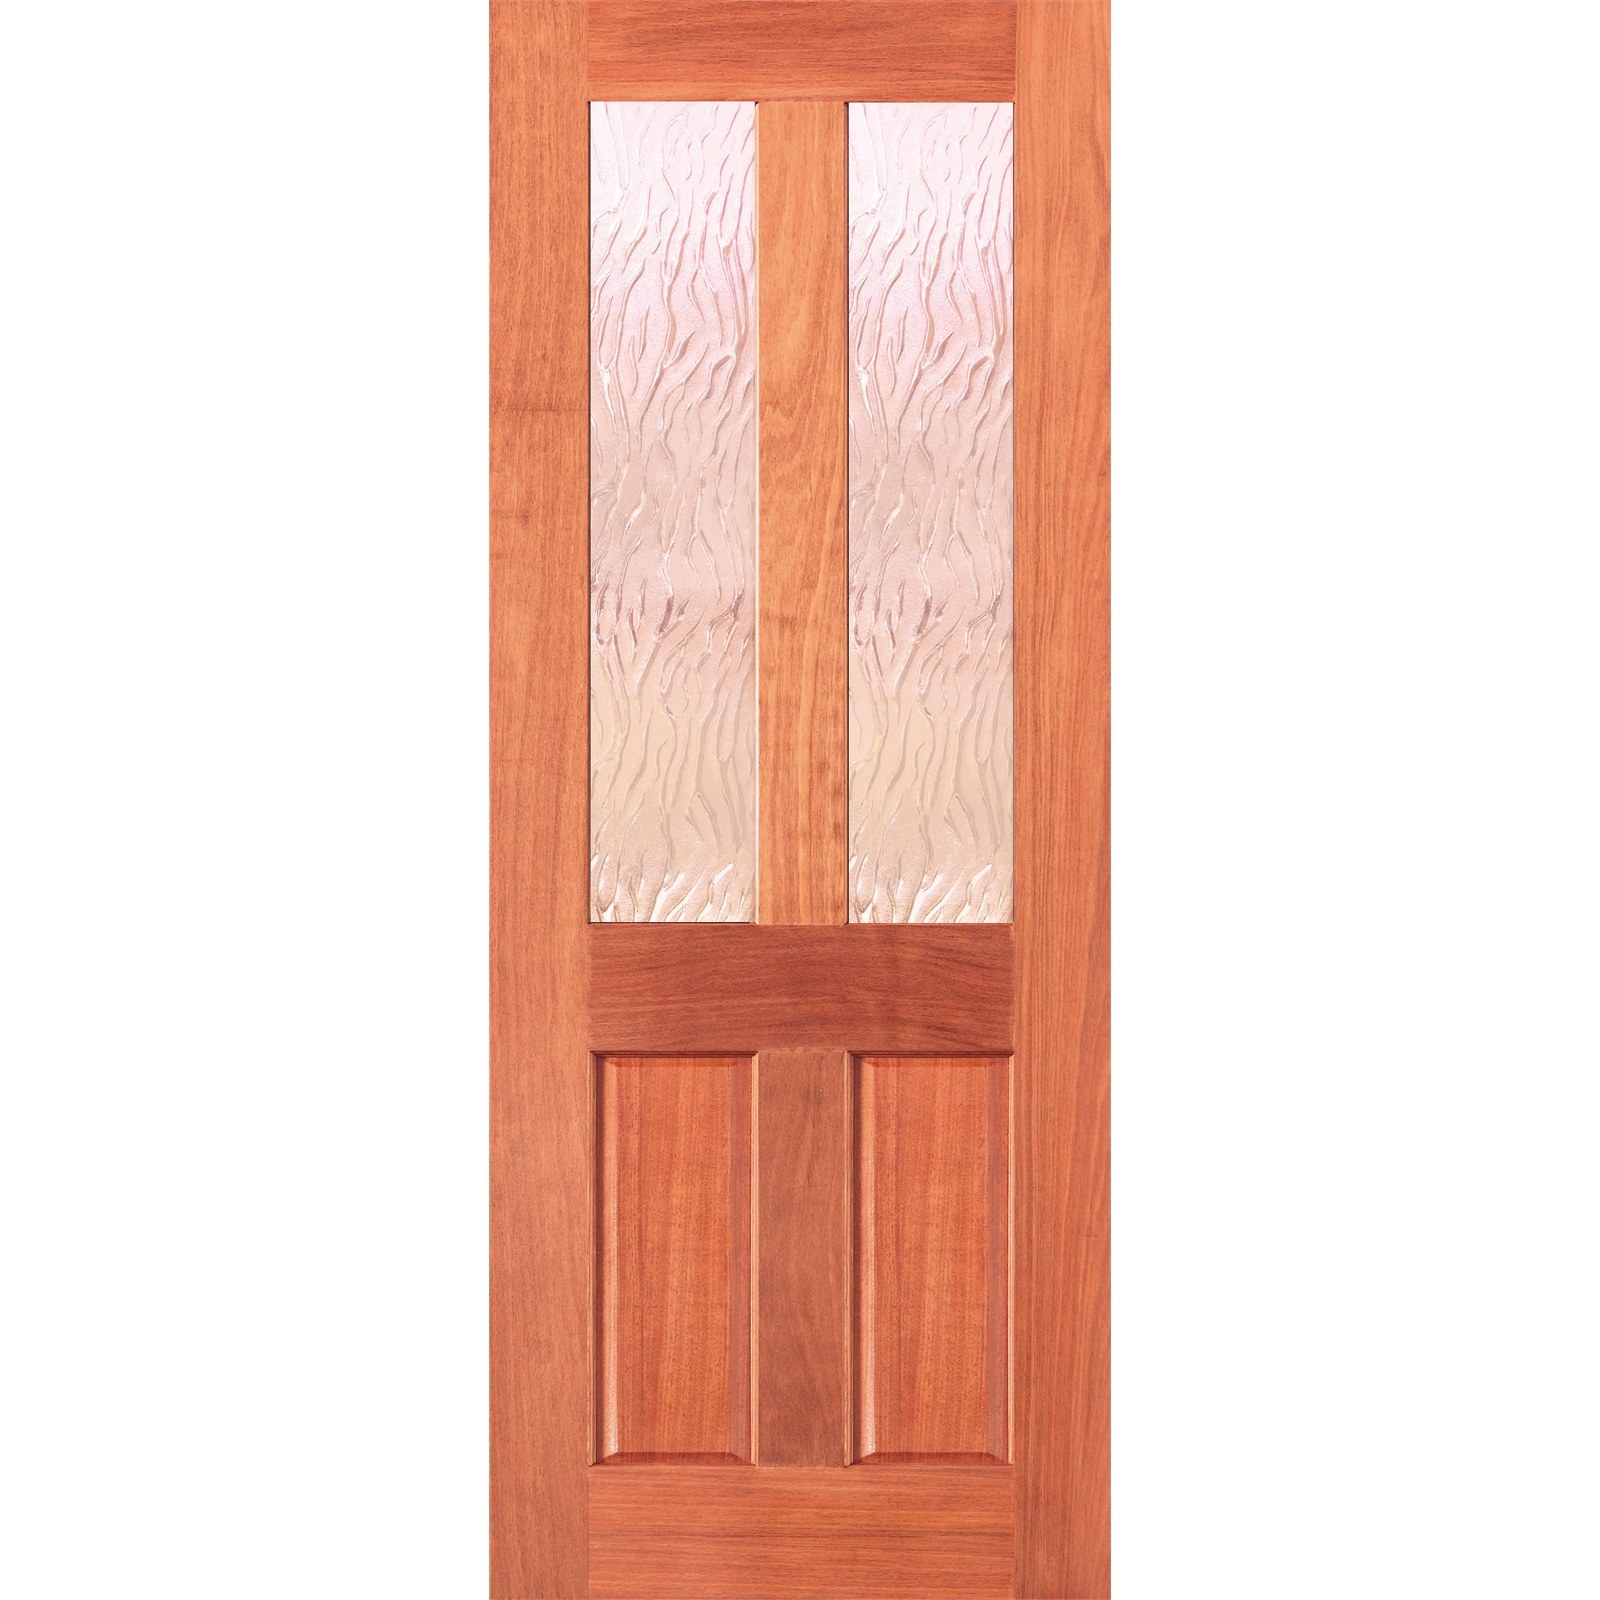 Woodcraft Doors 2040 x 820 x 40mm Cass Wave Safety Glass Entrance Door